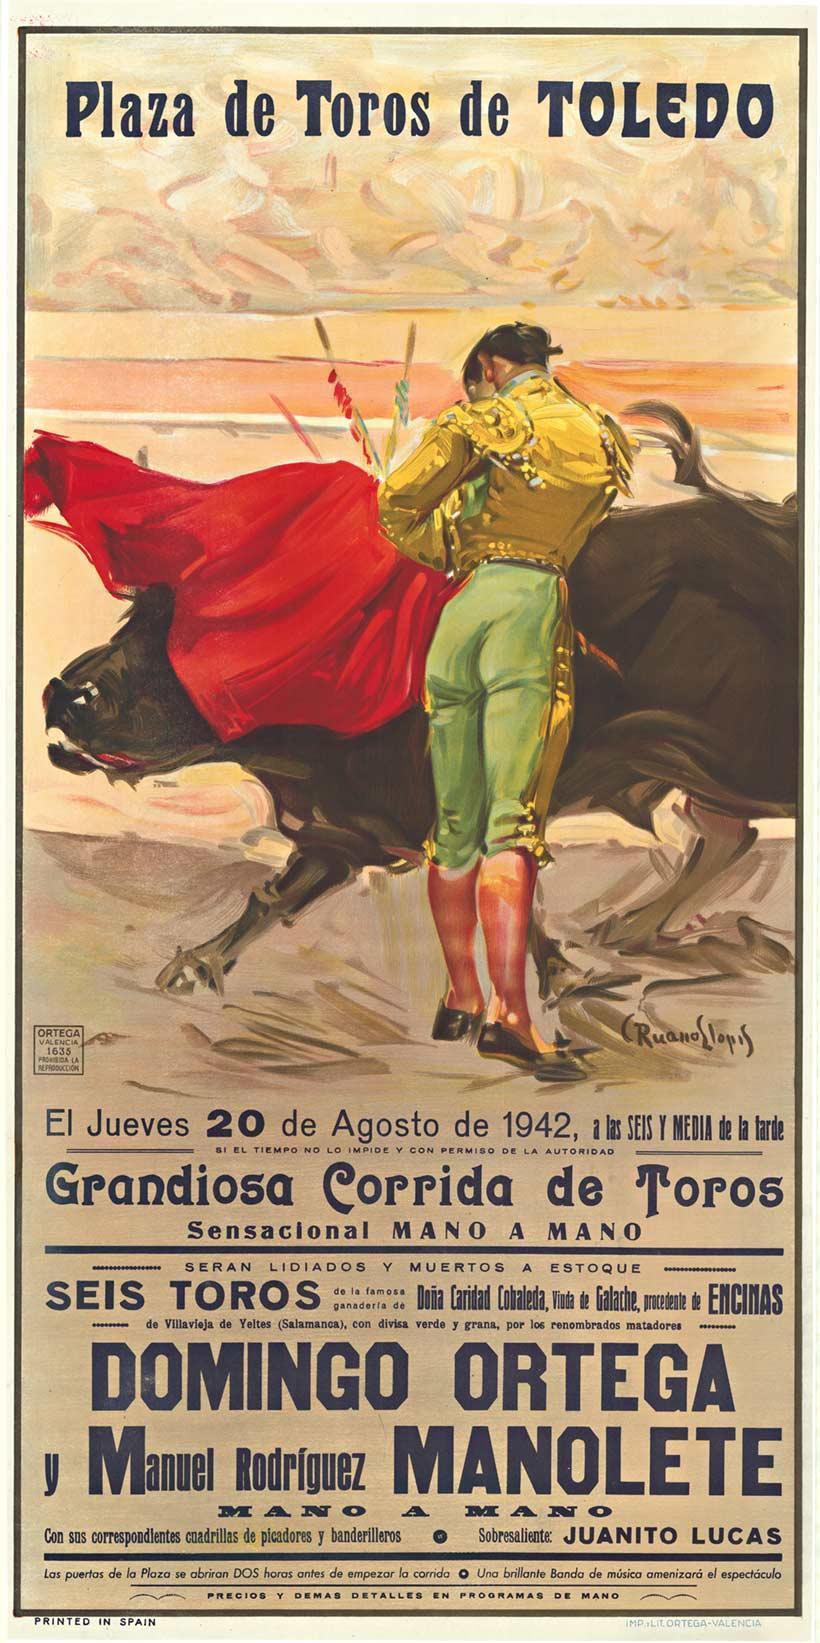 Original 1942 Plaza de Toledo vintage bullfighting poster